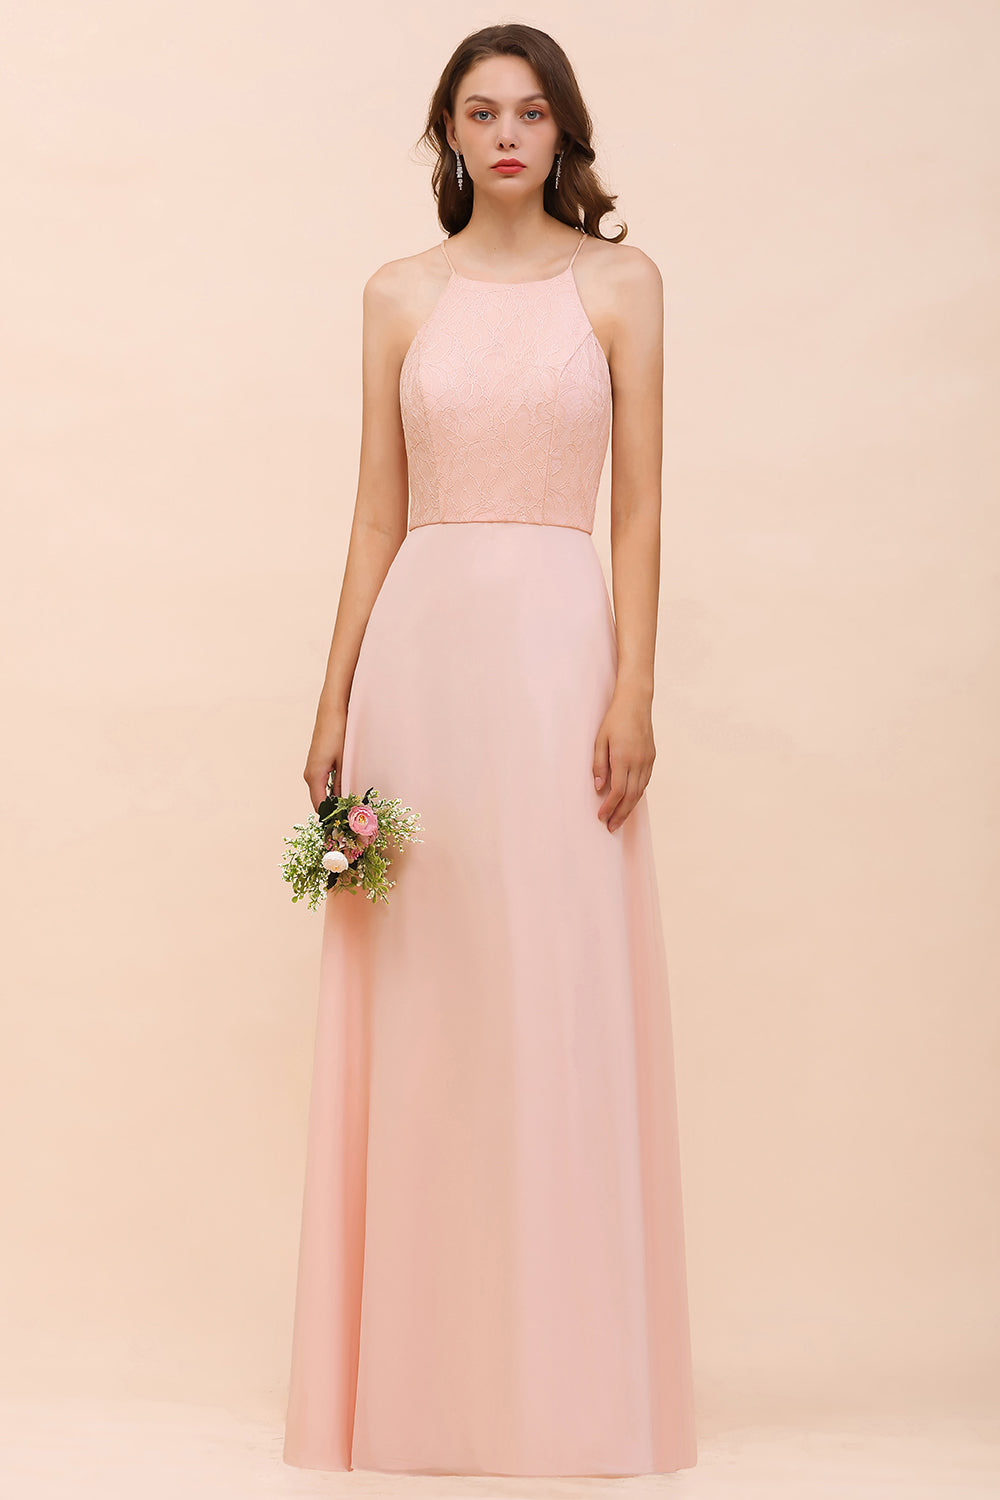 Bestellen Sie Elegante Brautjungfernkleider Rosa online bei babyonlinedress.de. Brautjungfernkleid Lang Günstig für Sie zur Hochzeit gehen.